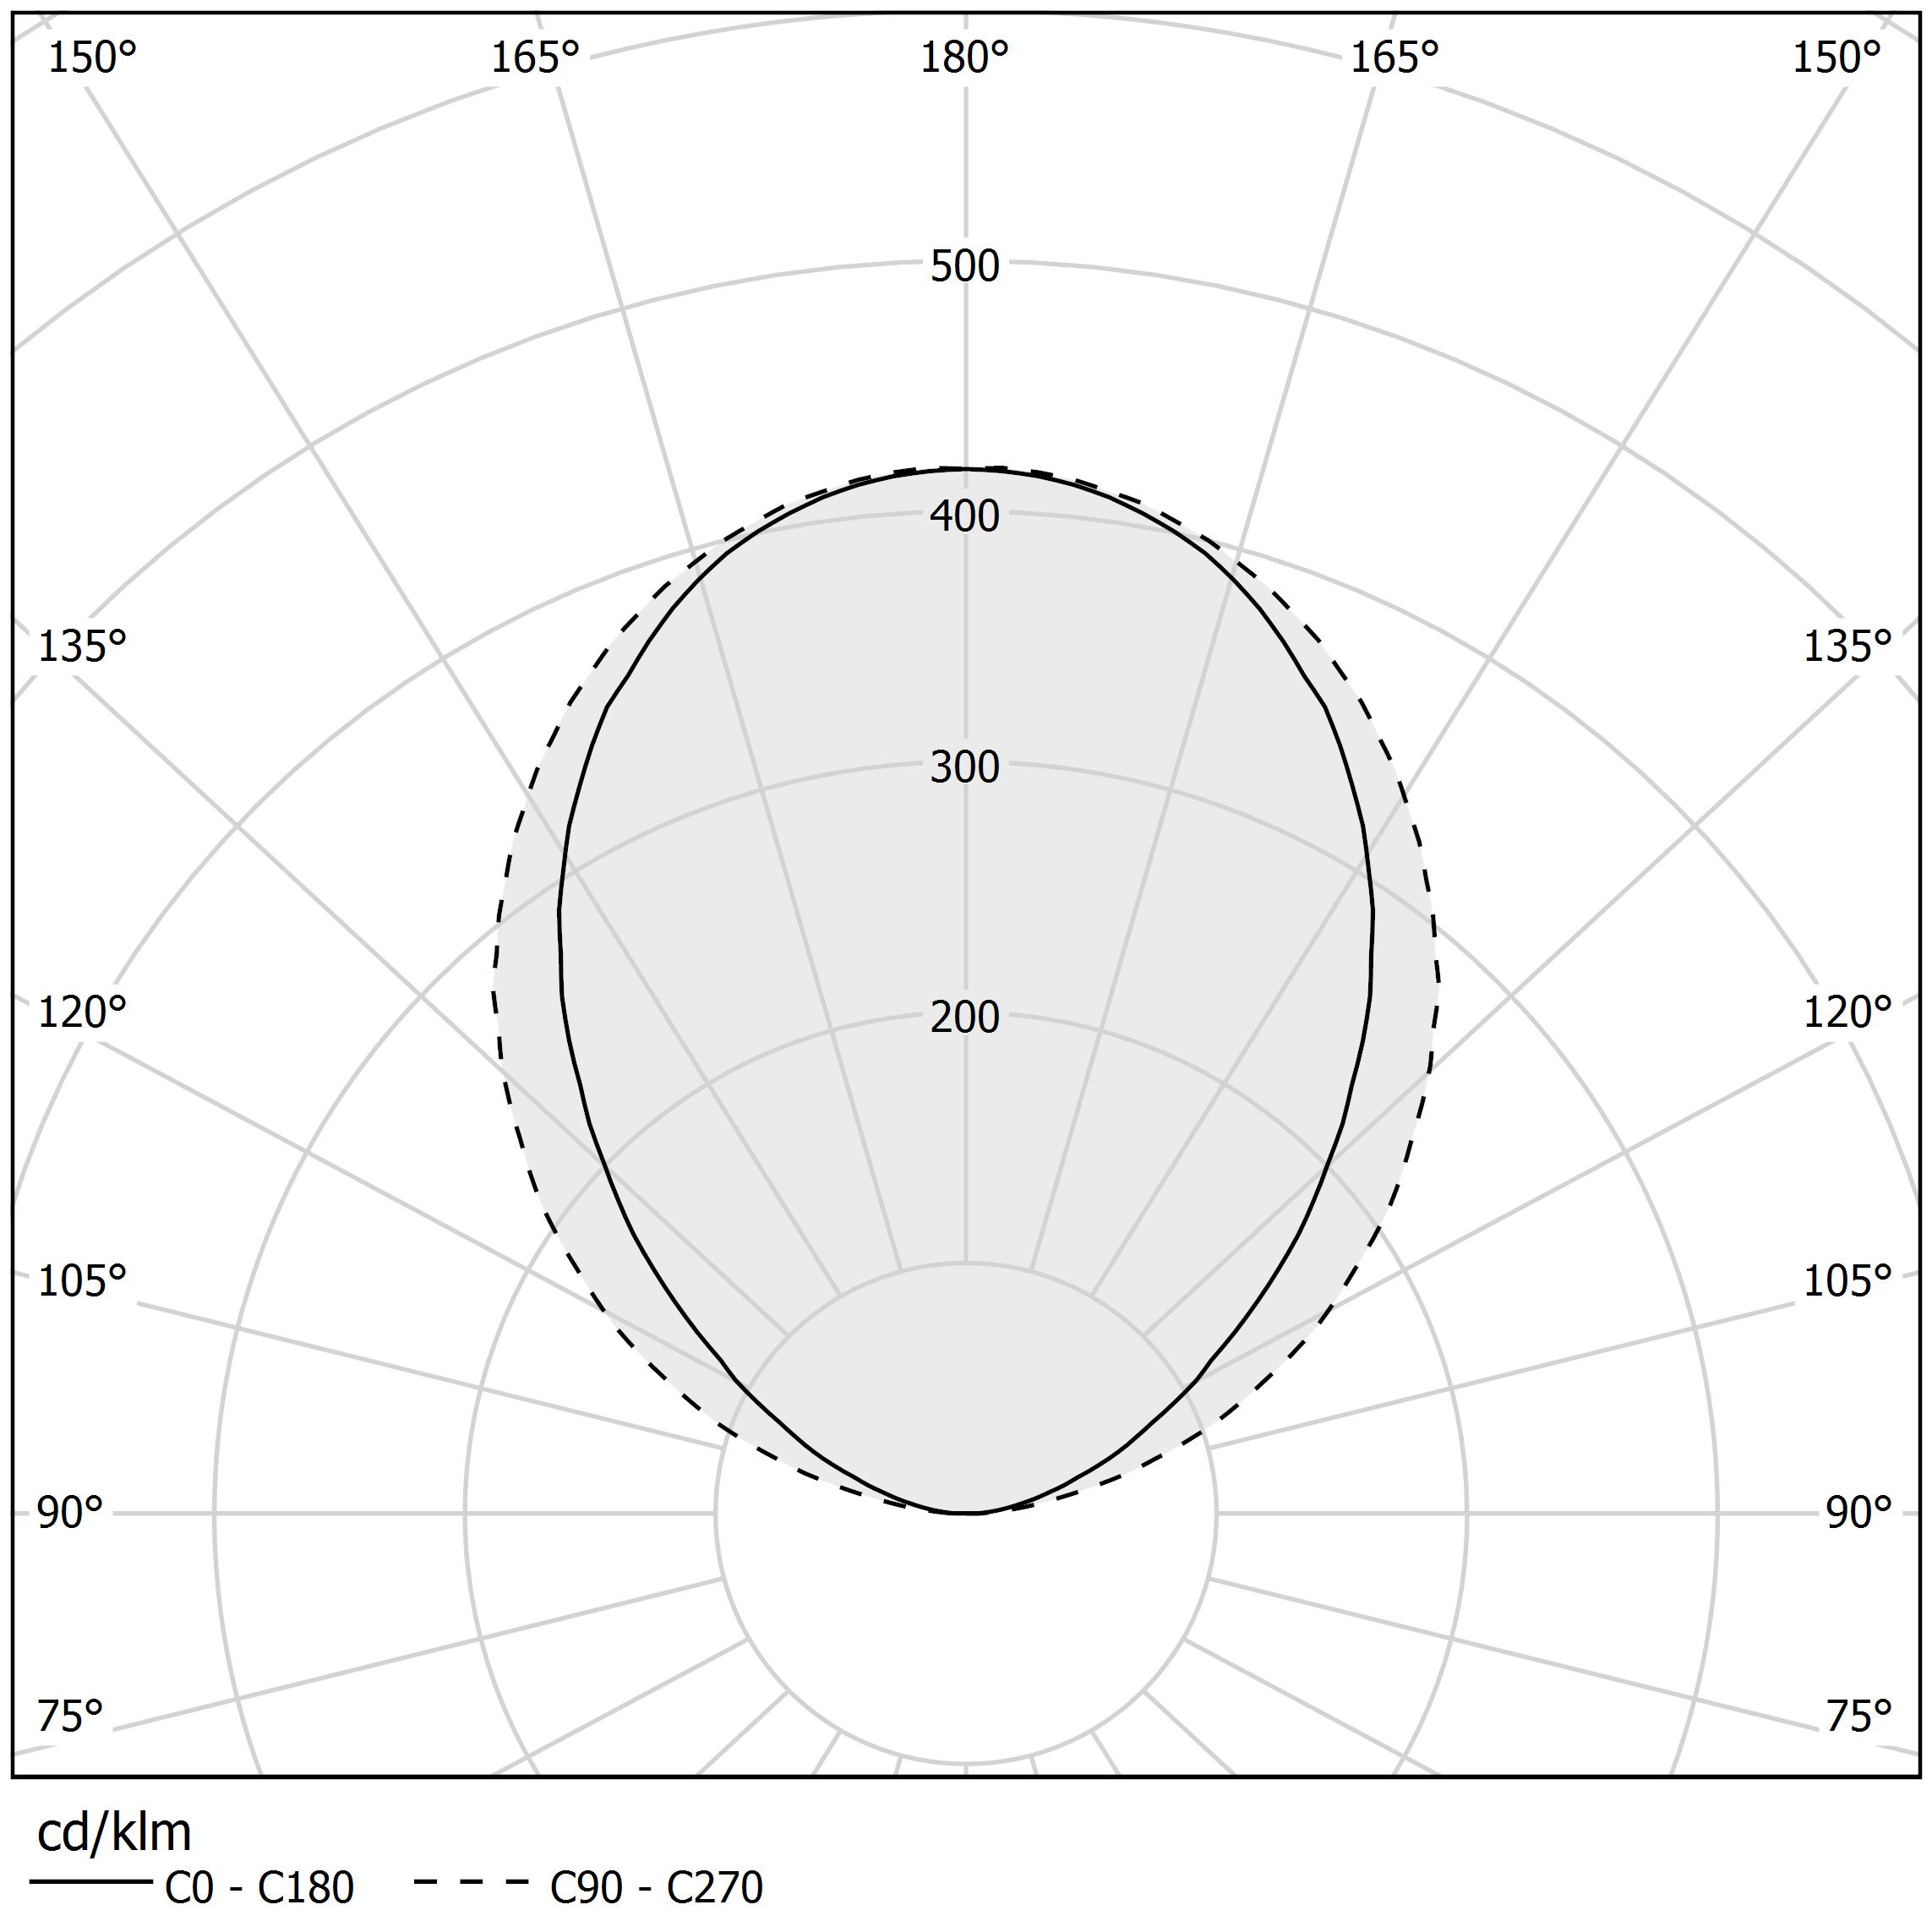 Polar diagram - VIISI - L02101.210.0402